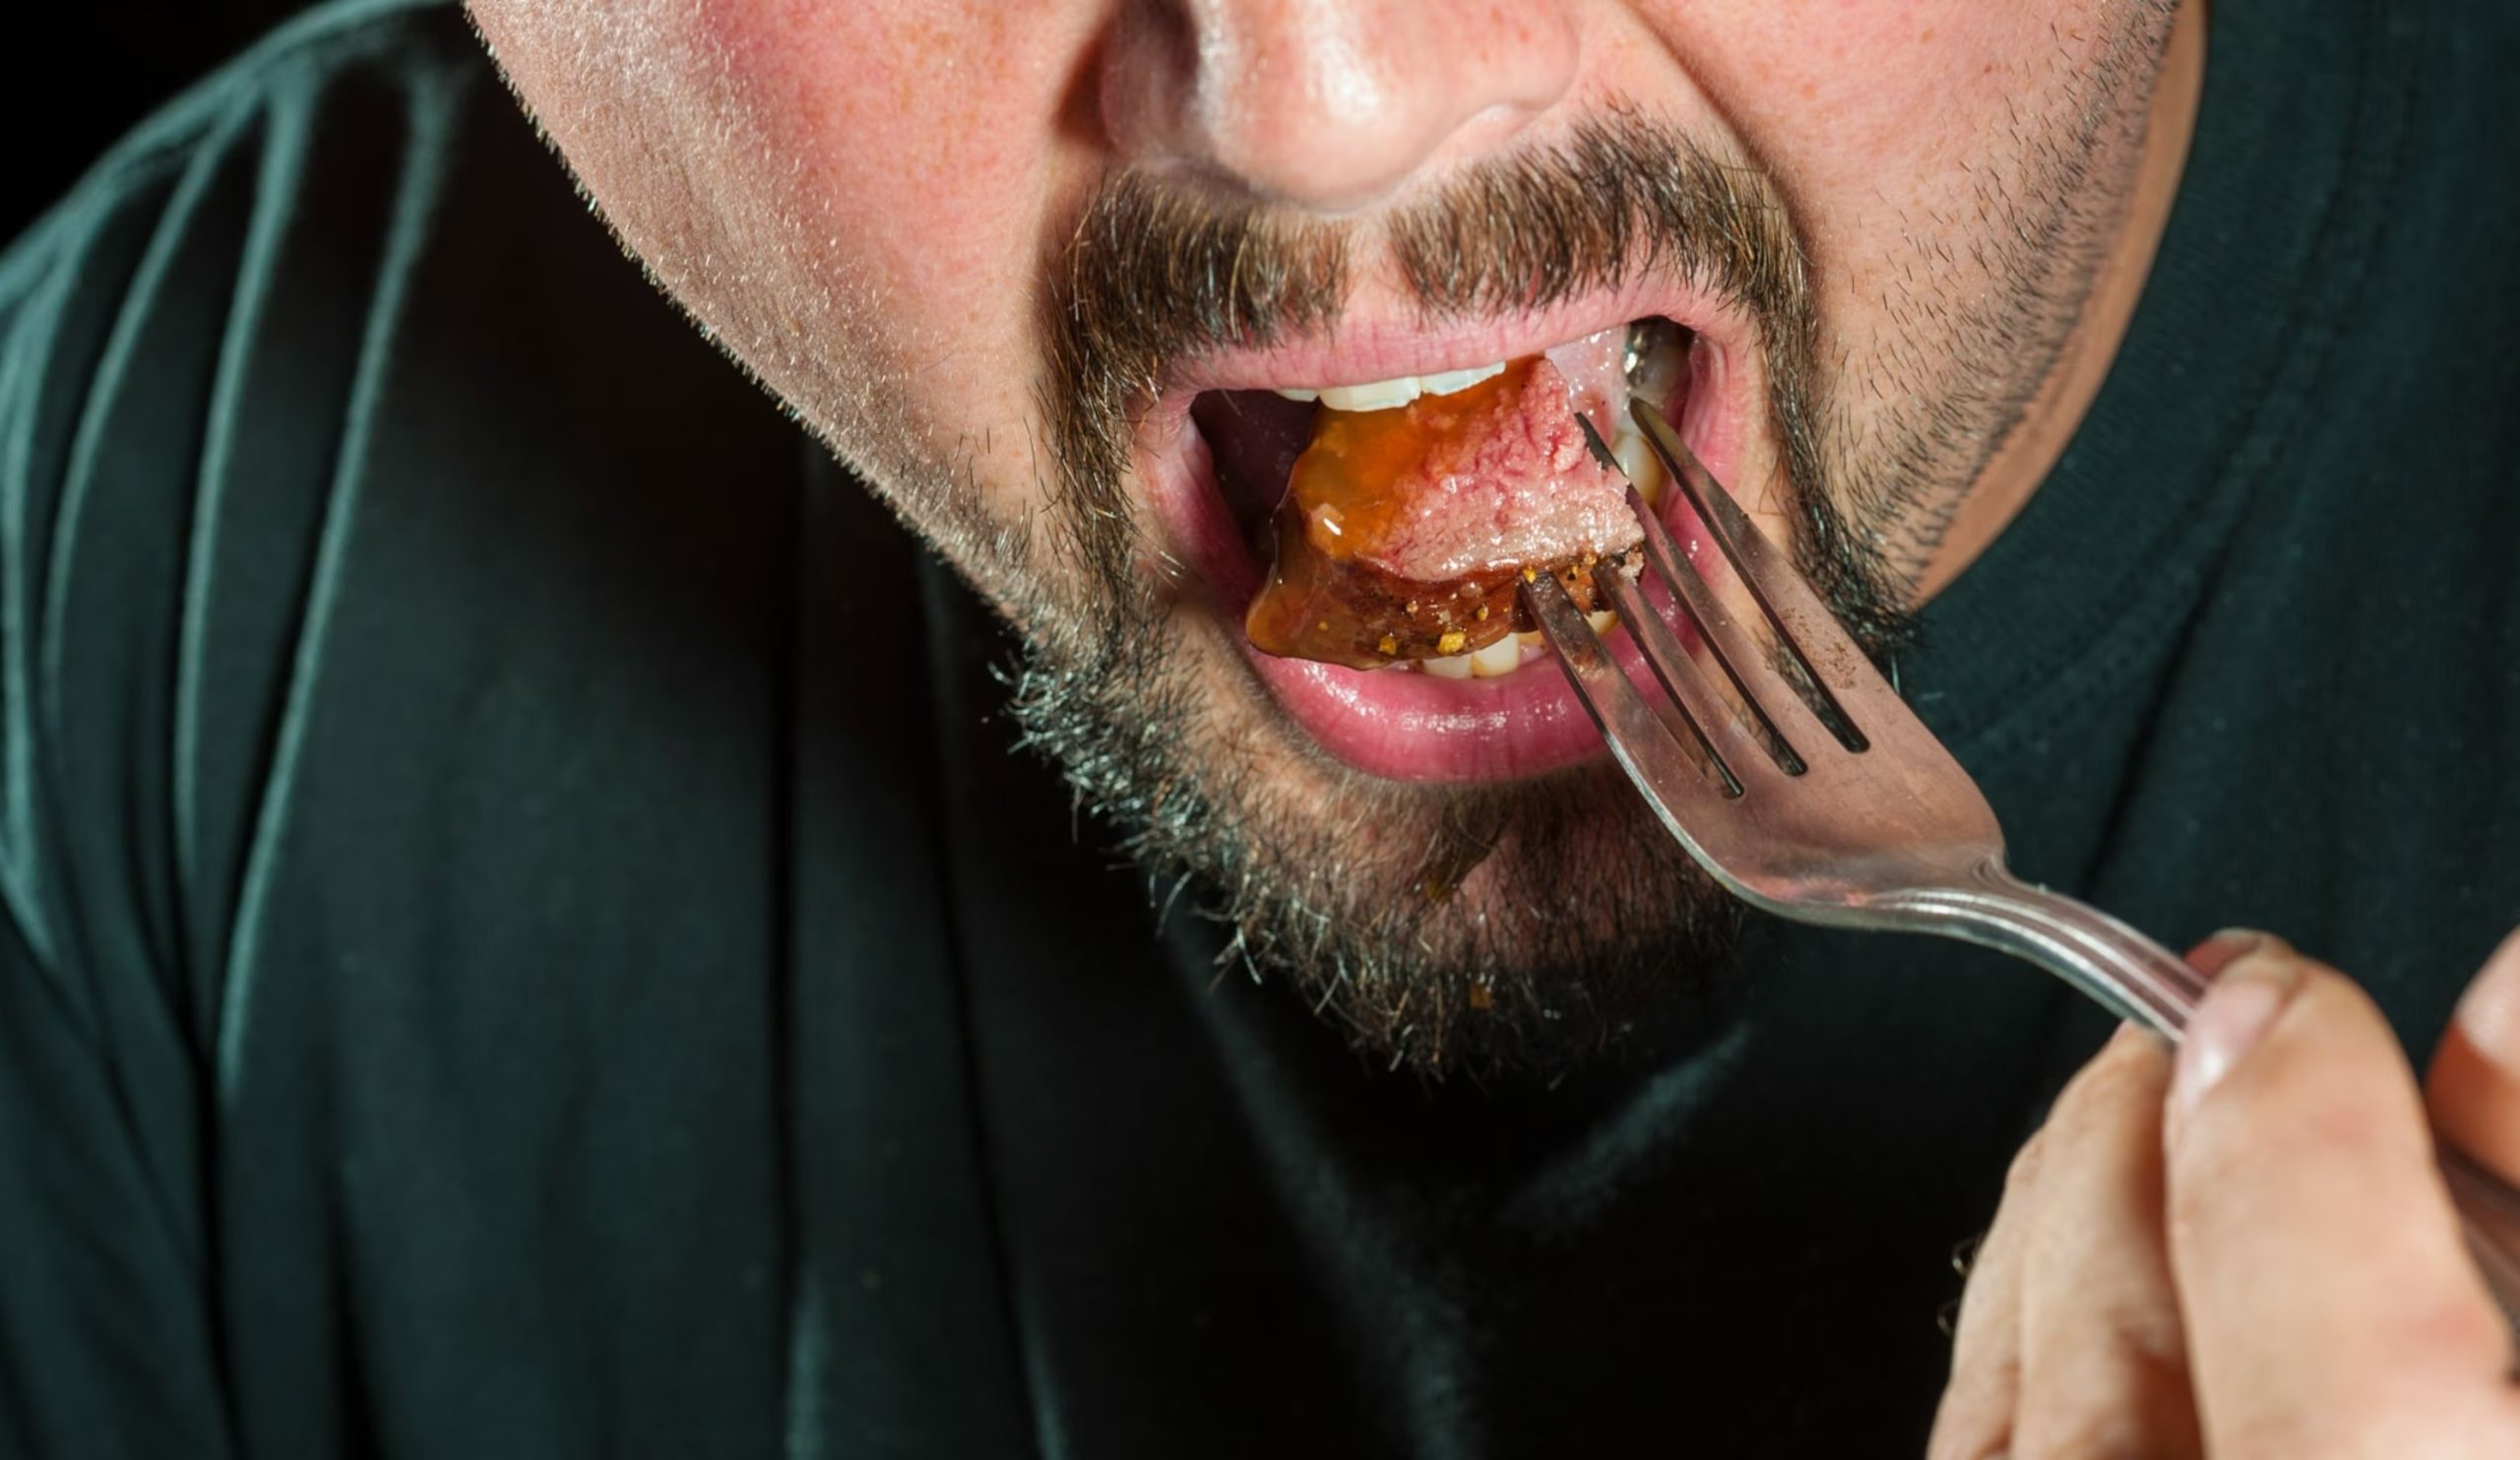 مرد در حال خوردن غذا در چنگال - درمان خانگی مسمومیت غذایی